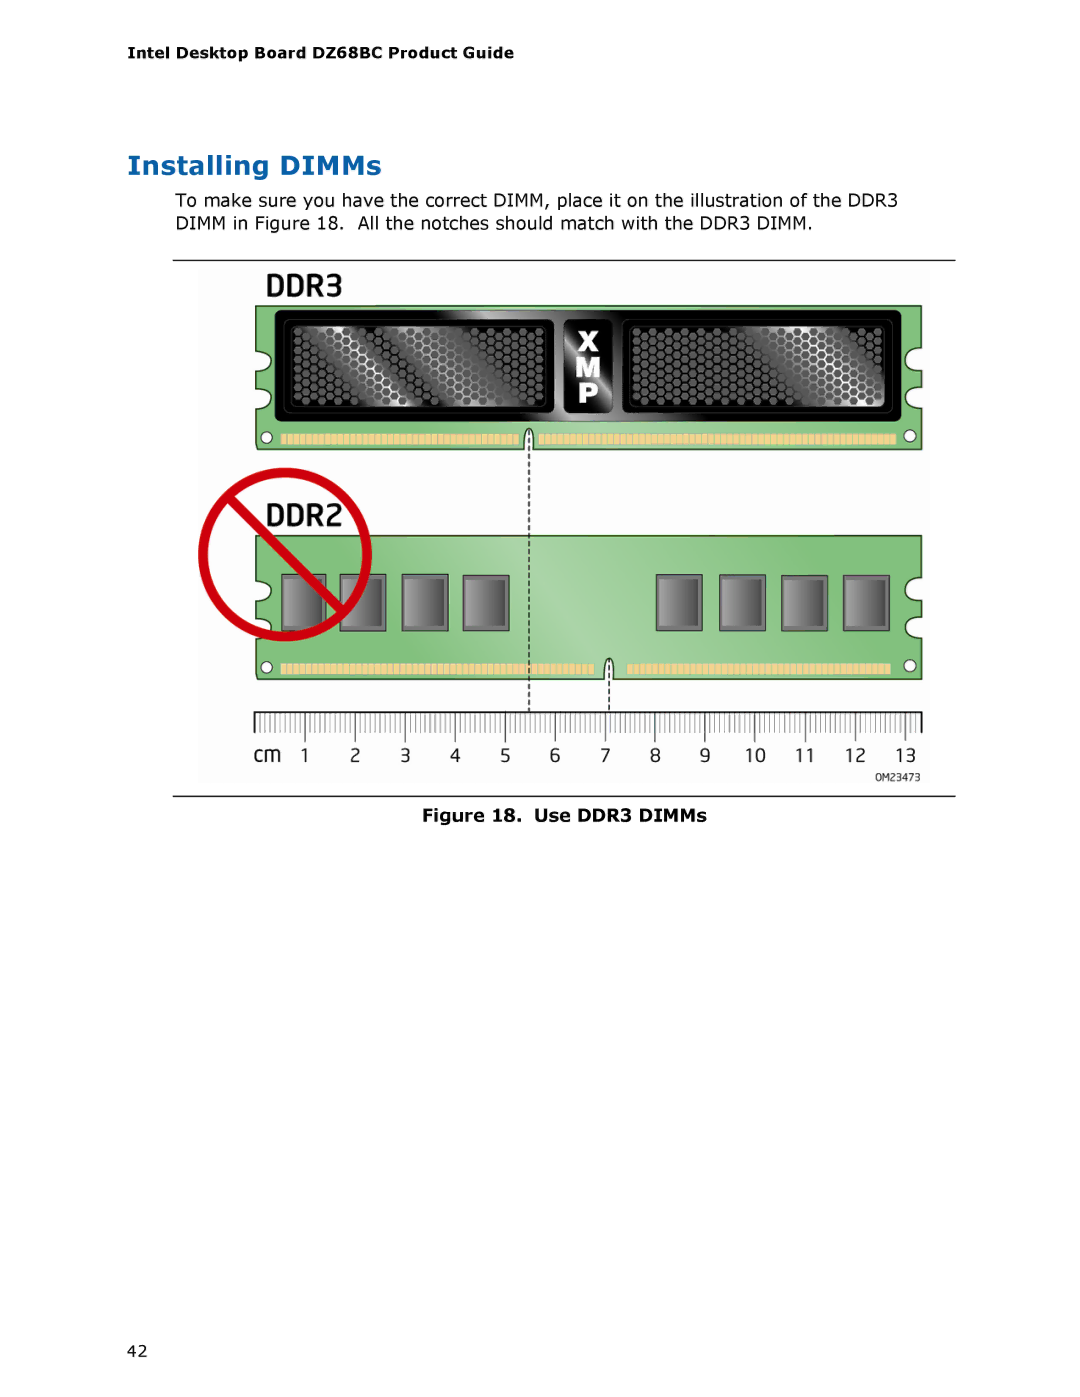 Intel BLKDZ68BC manual Installing DIMMs, Use DDR3 DIMMs 